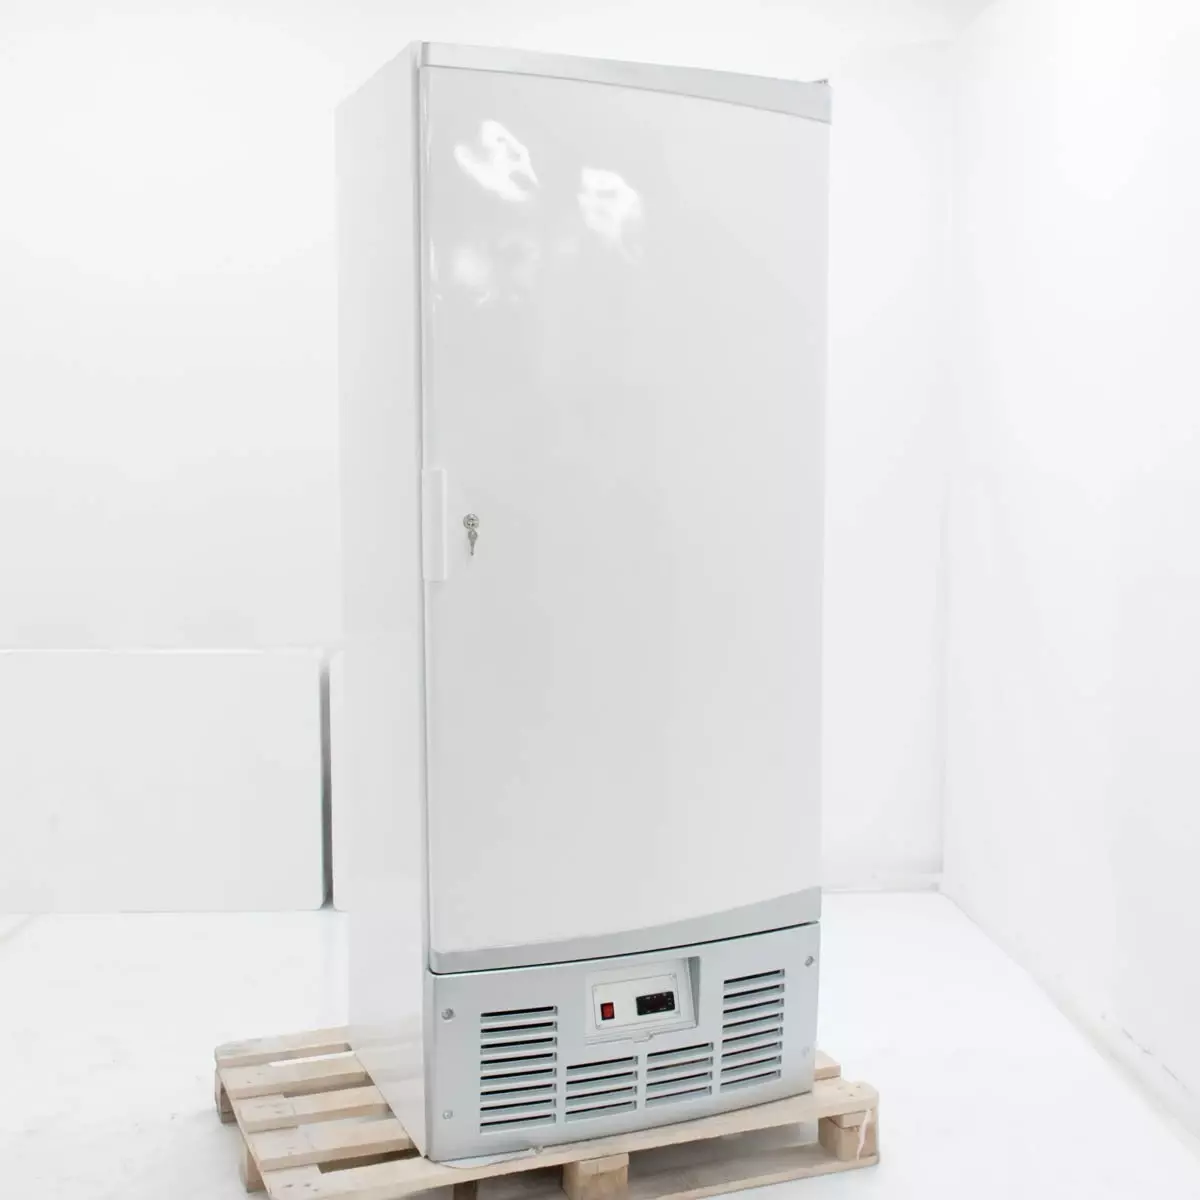 Шкаф холодильный Helkama C5